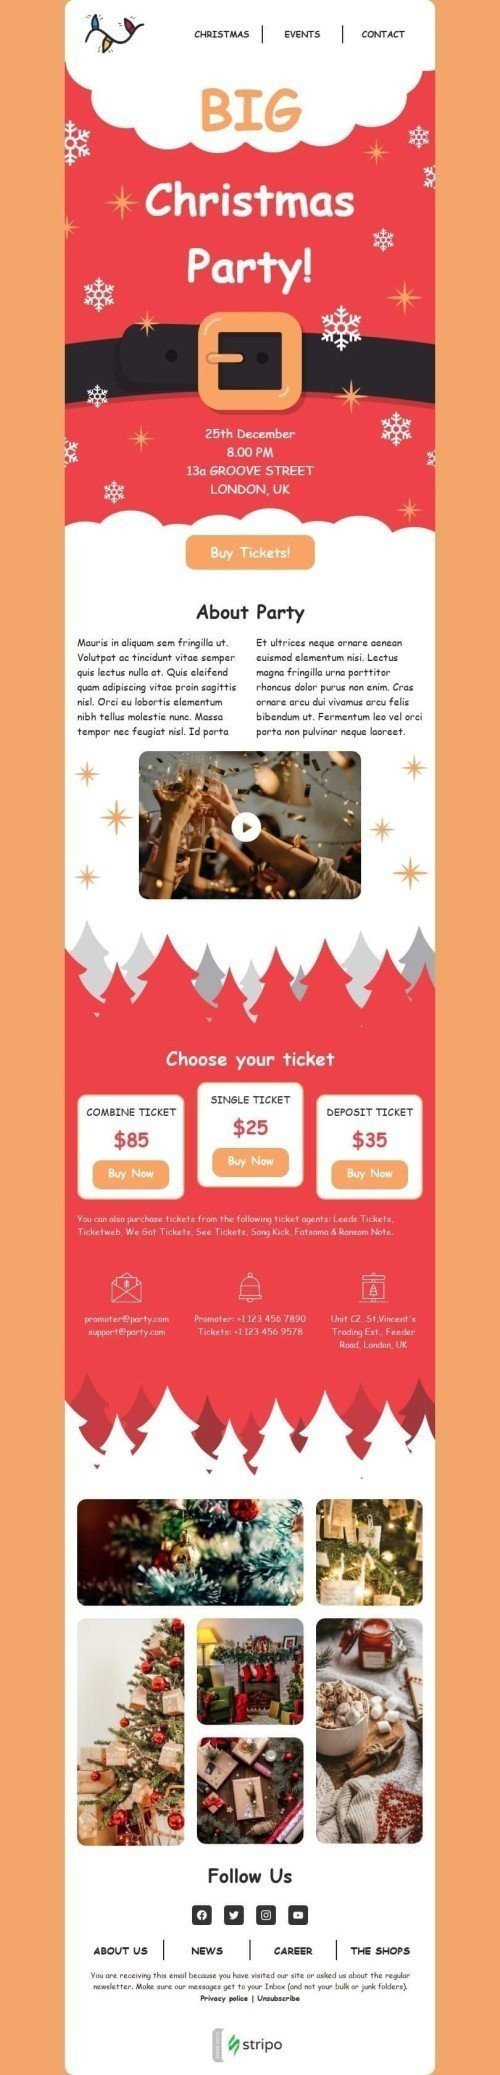 Plantilla de correo electrónico «Gran fiesta de navidad» de Navidad para la industria de Eventos Vista de móvil